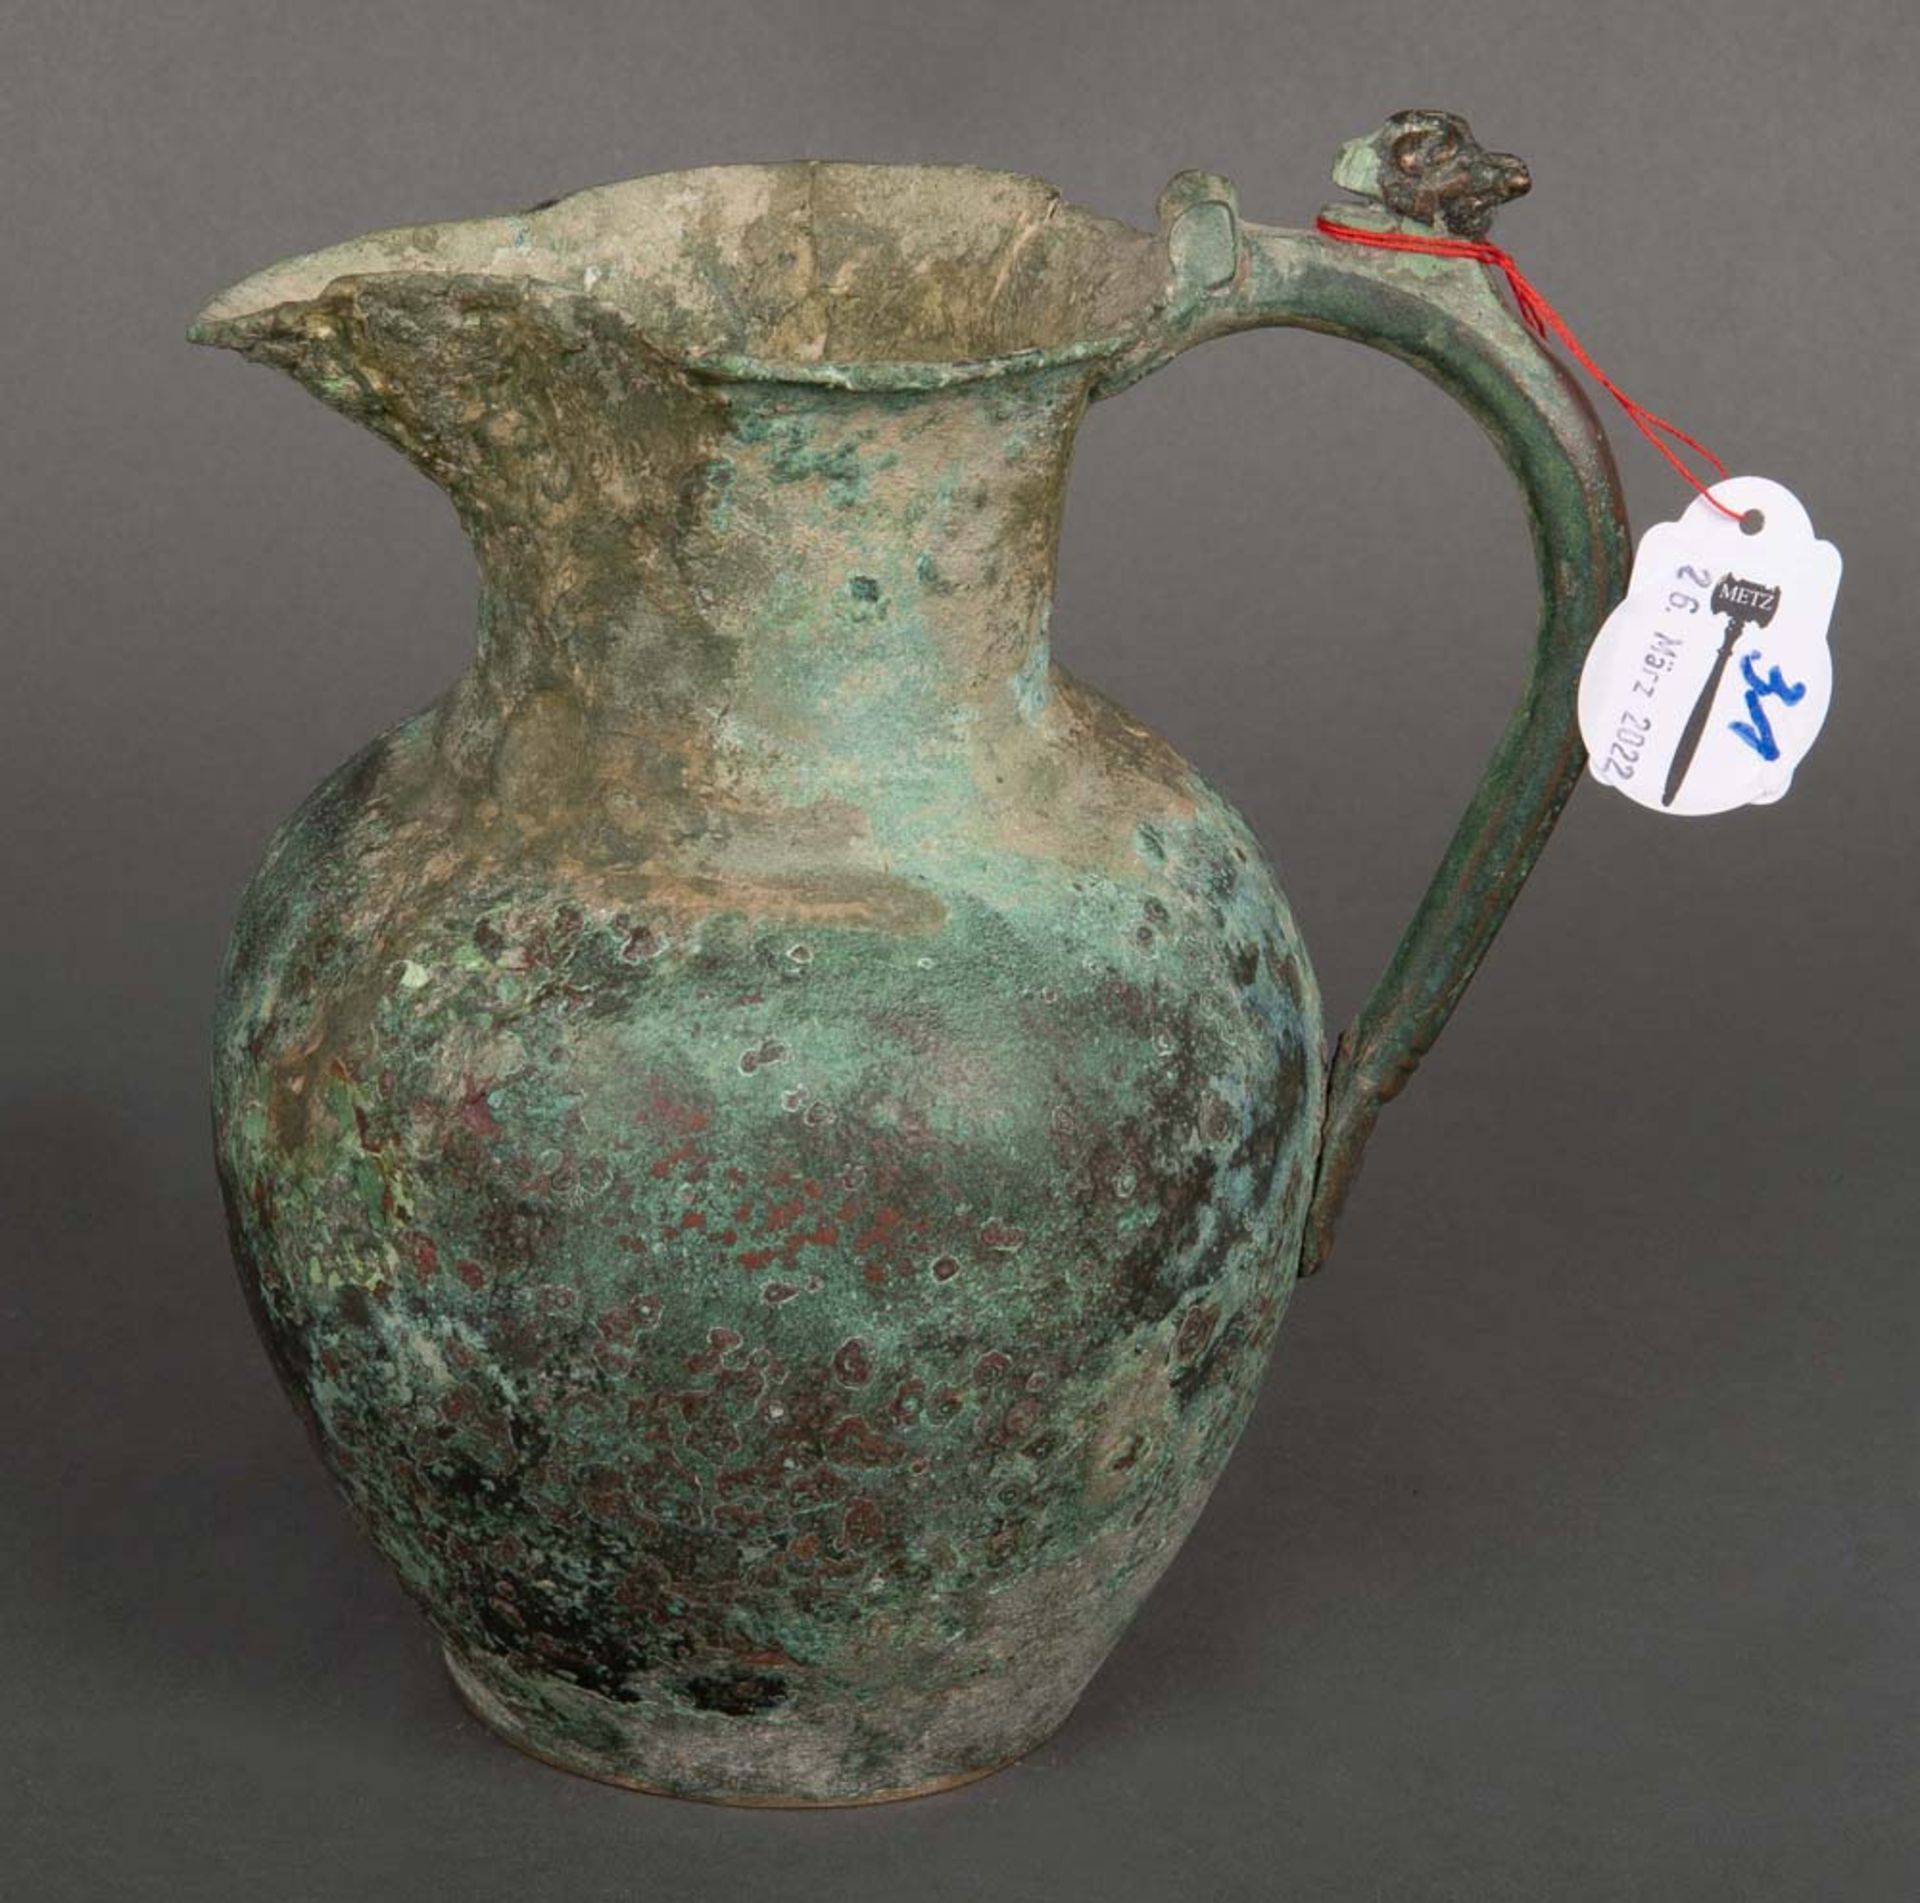 Henkelkrug. Wohl Urartu 8. Jh. v. Chr. Bronze, getrieben, H=20 cm, Provenienz: Athena, München.